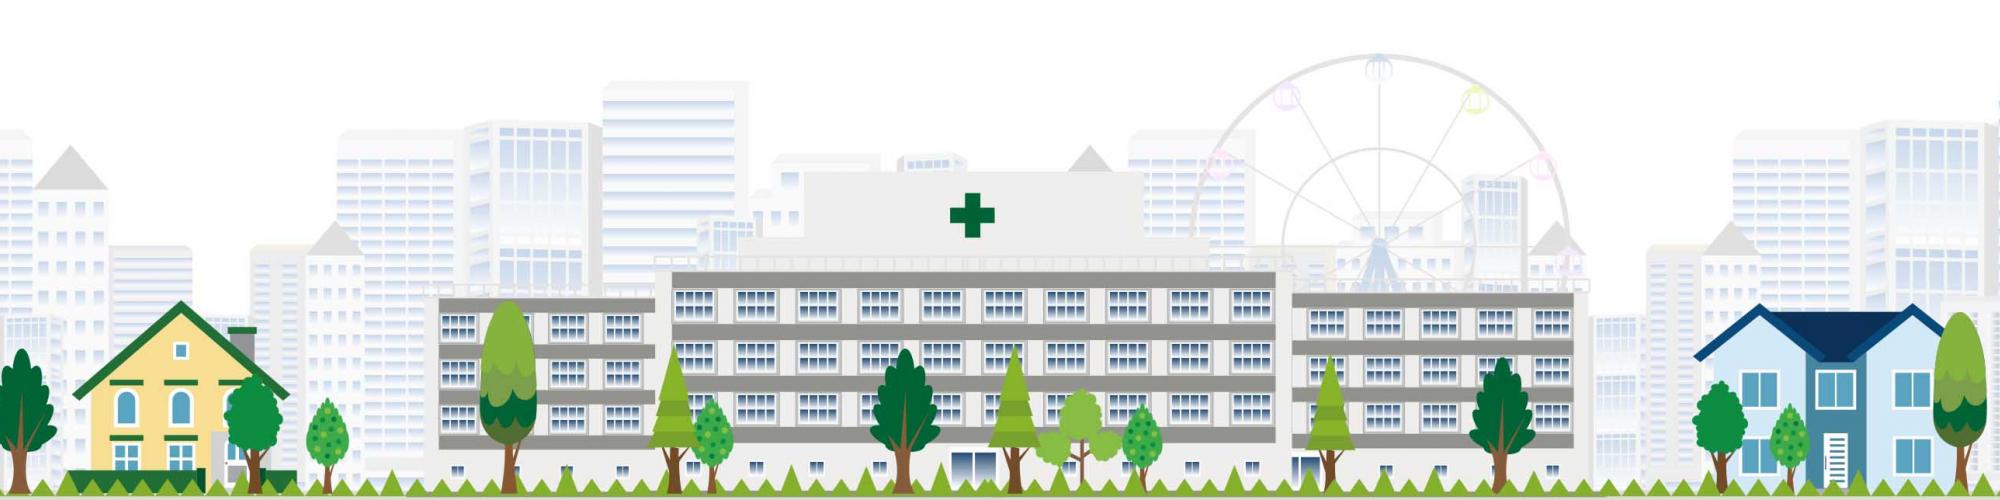 Klinik Sanssouci Potsdam GmbH & Co. KG